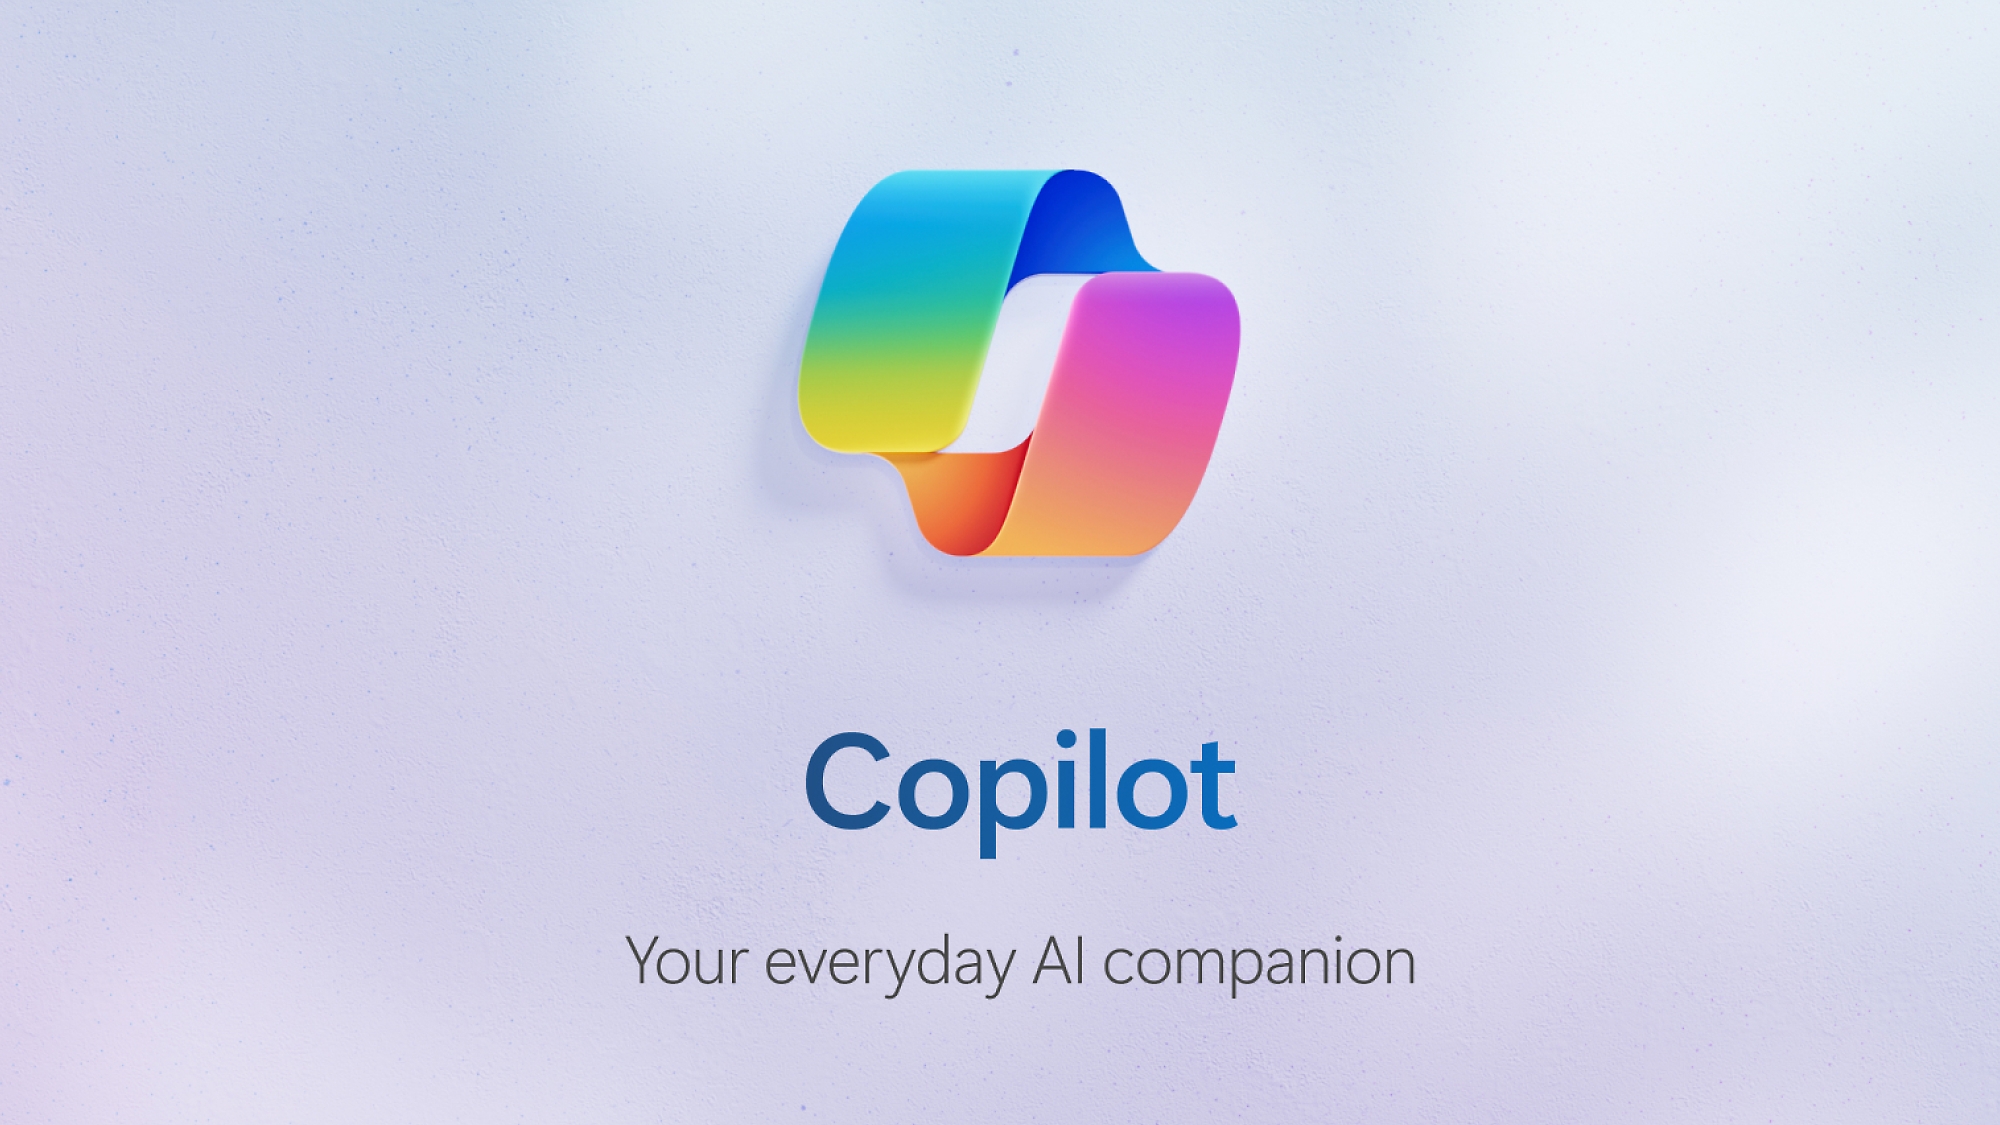 Miniatura de vídeo do Copilot com o logotipo do Copilot